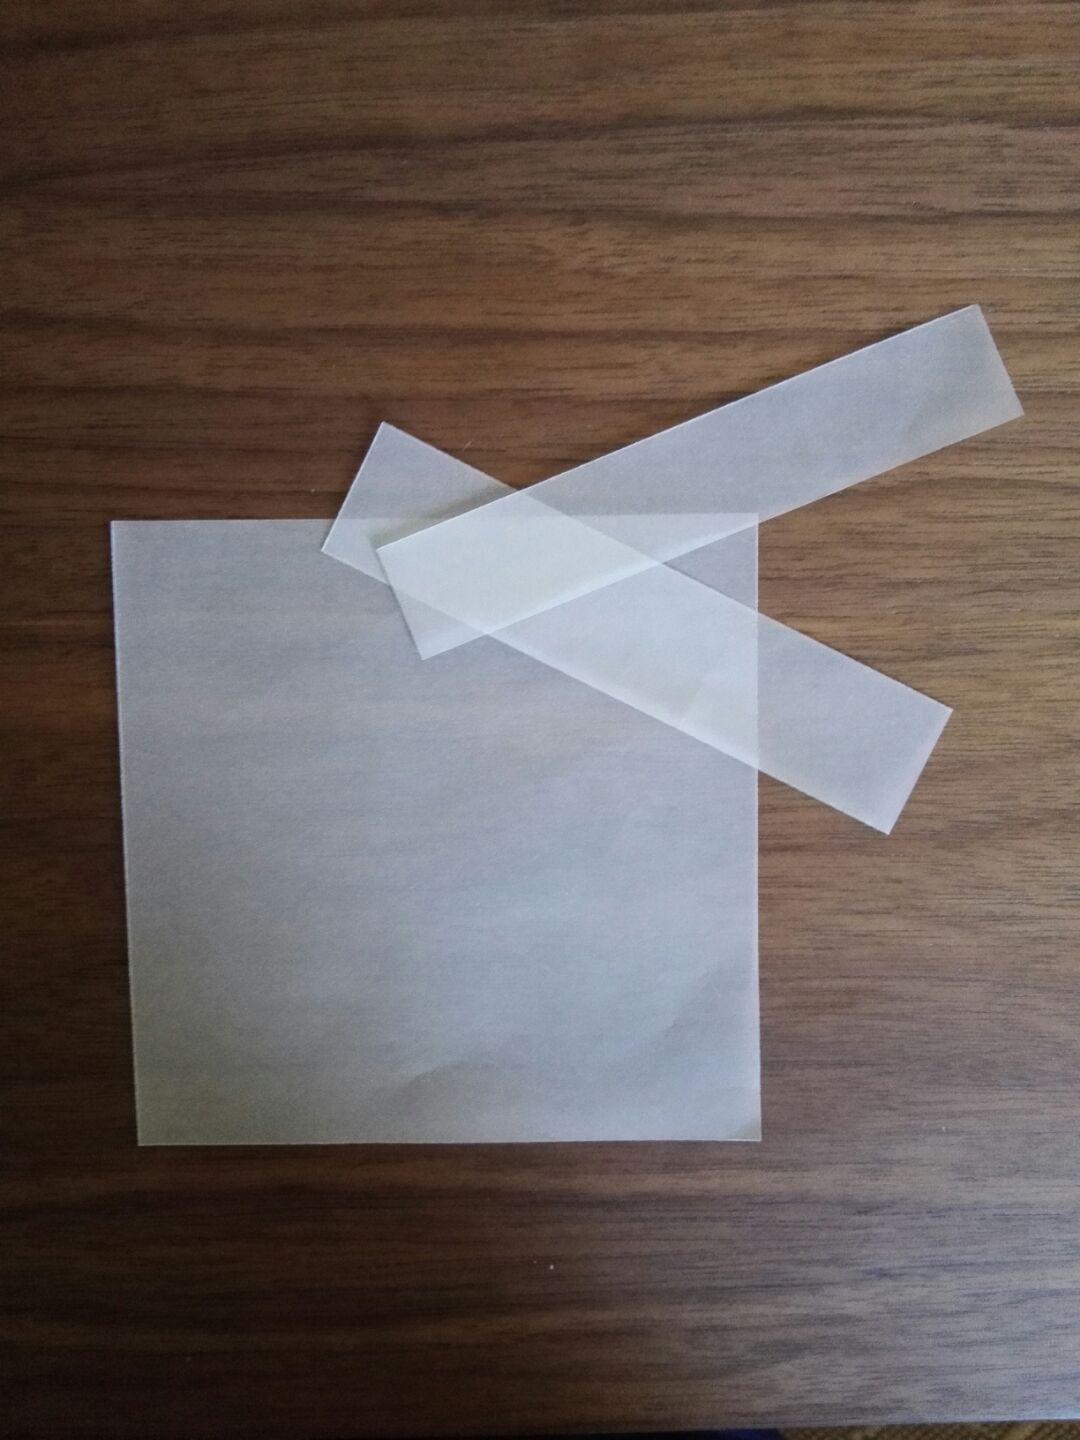 大家在折纸时肯定有酱的疑惑：正方形有时不用对角线，但是咋裁粗来嘞？